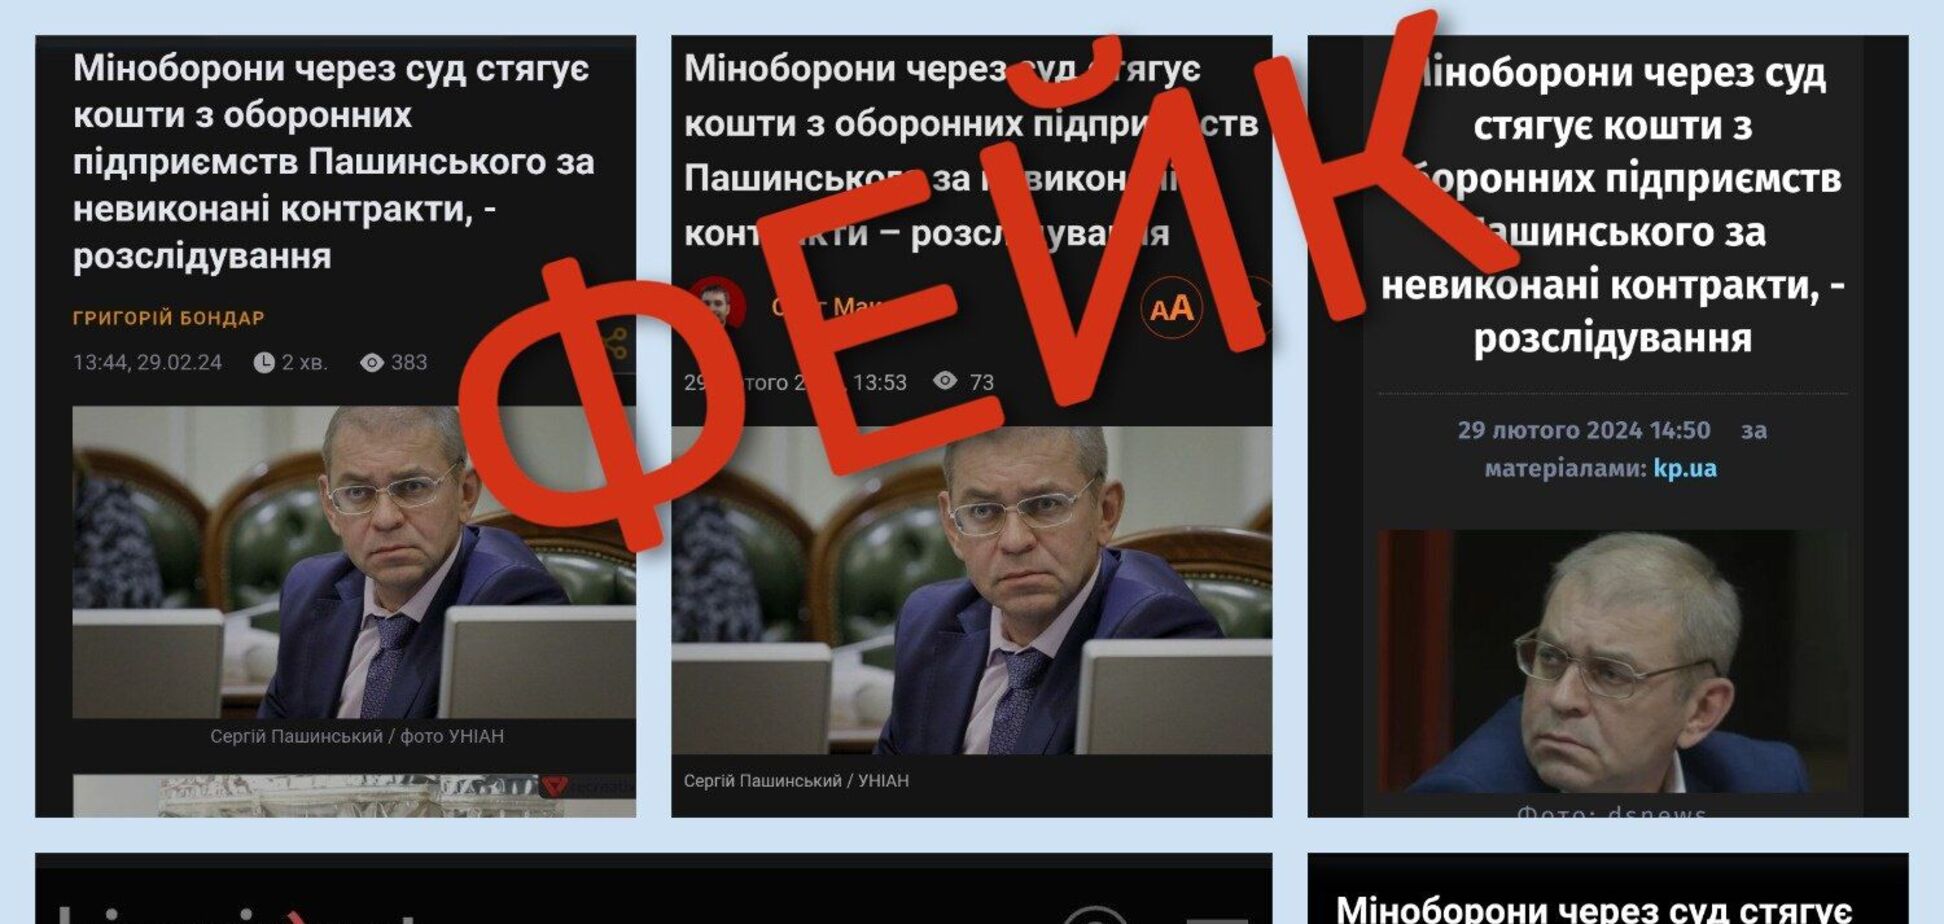 ООО 'Украинская бронетехника' не имеет никакой связи с Пашинским. СМИ распространили фейк